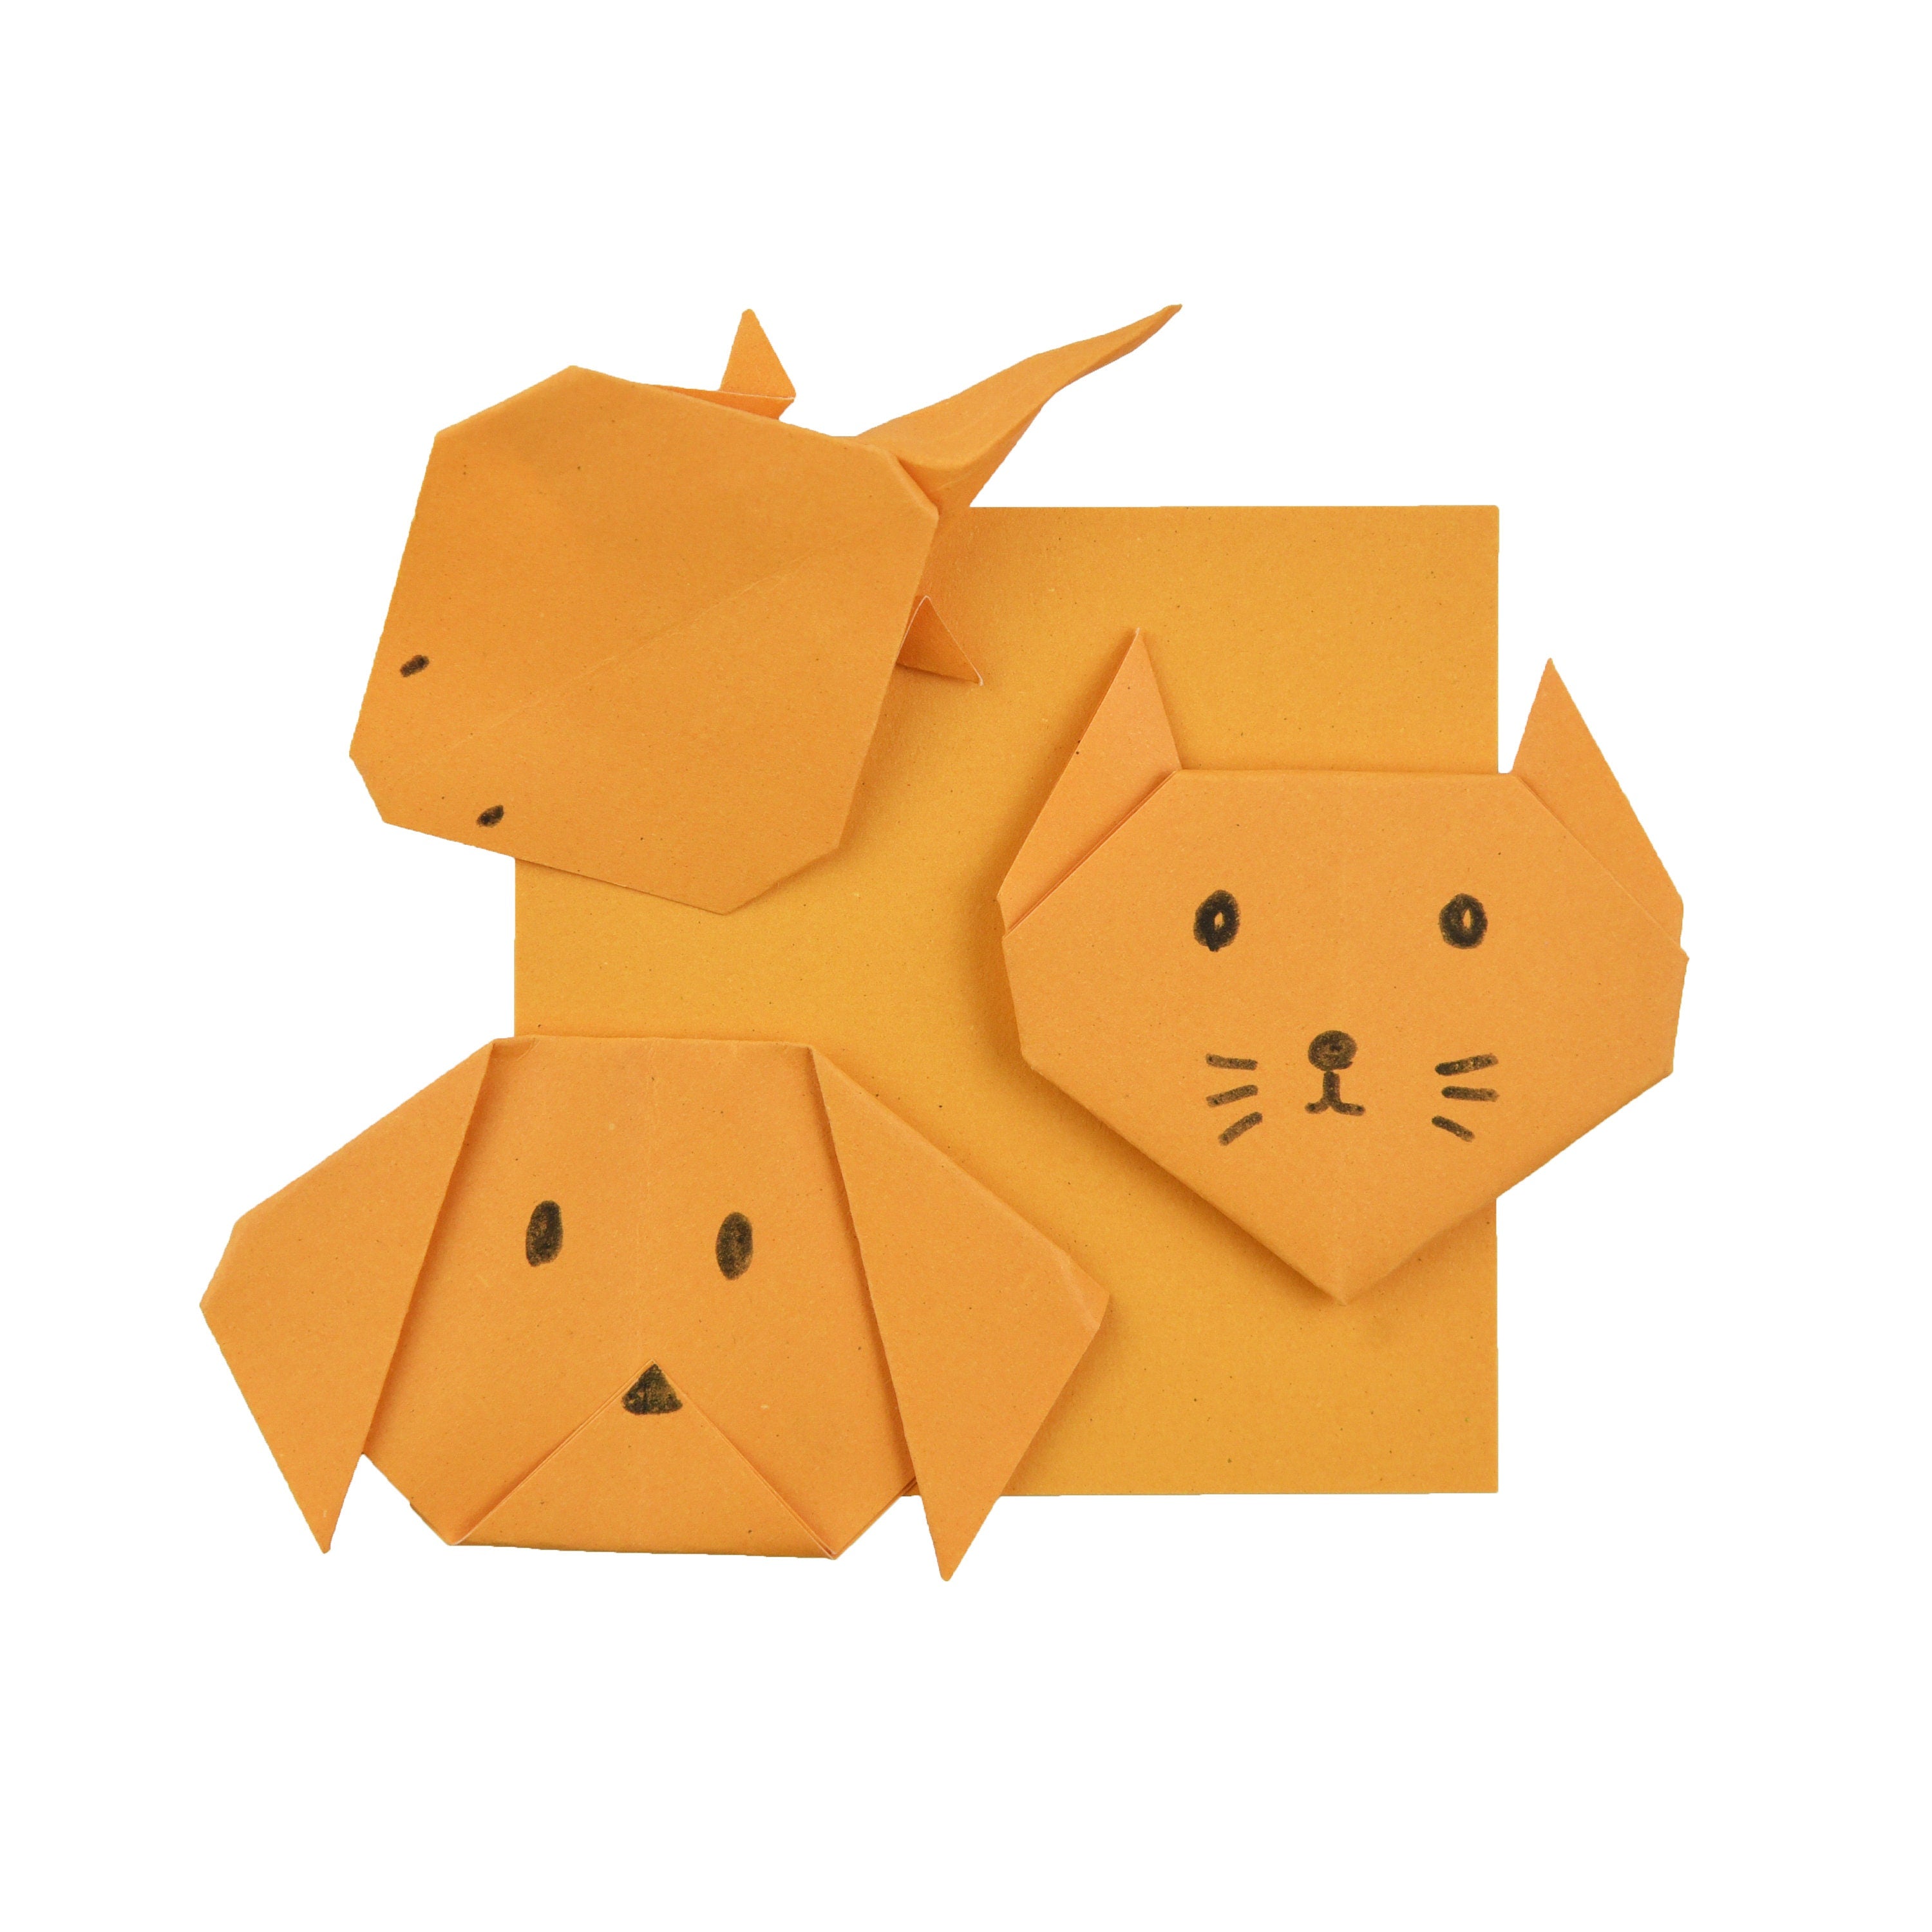 100 Hojas de Papel Origami - 3x3 pulgadas - Paquete de Papel Cuadrado para Plegar, Grullas de Origami y Decoración - S27